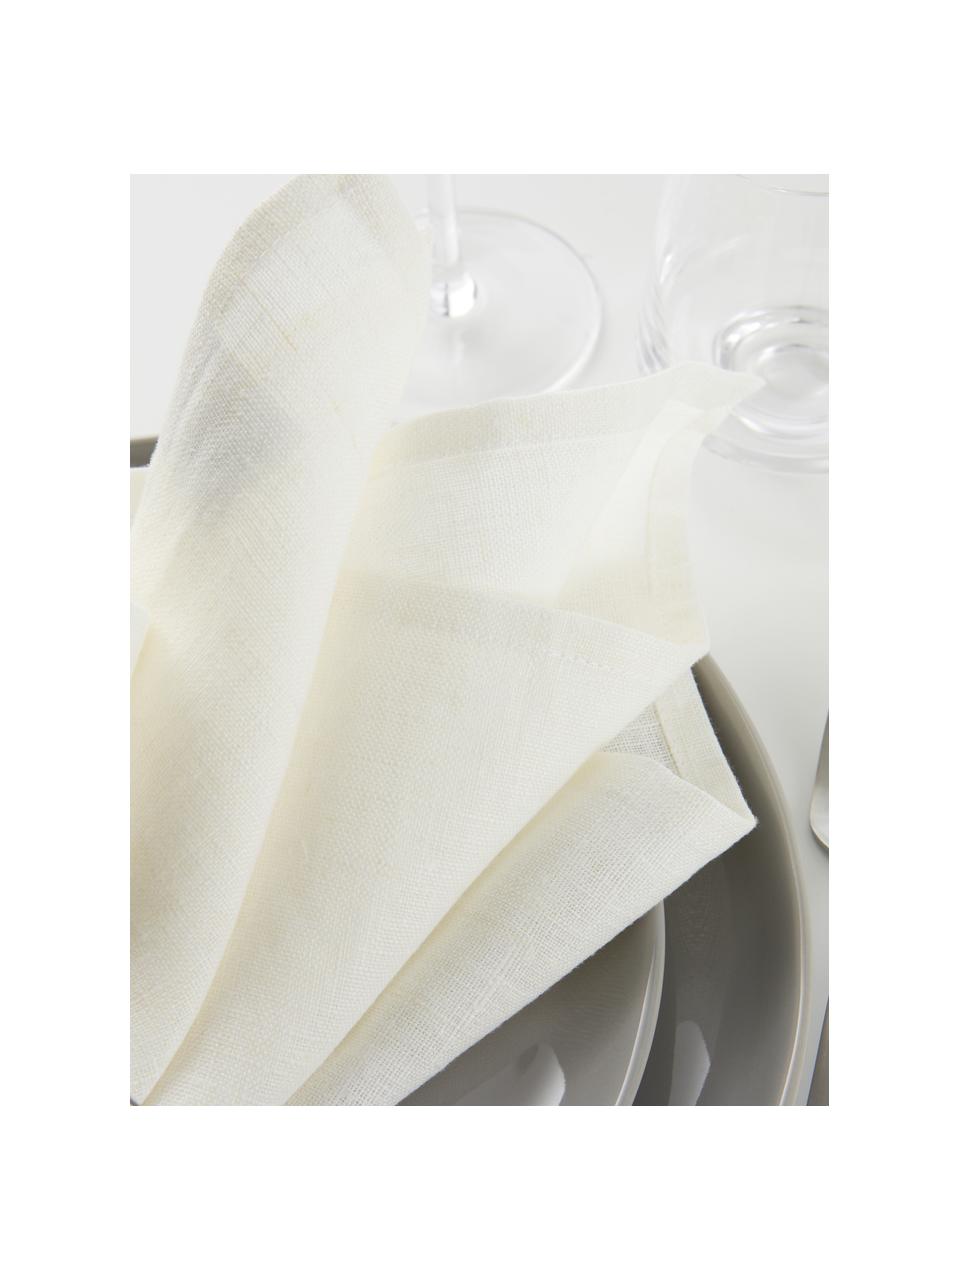 Leinen-Servietten Heddie in Weiß, 2 Stück, 100% Leinen, Weiß, 45 x 45 cm